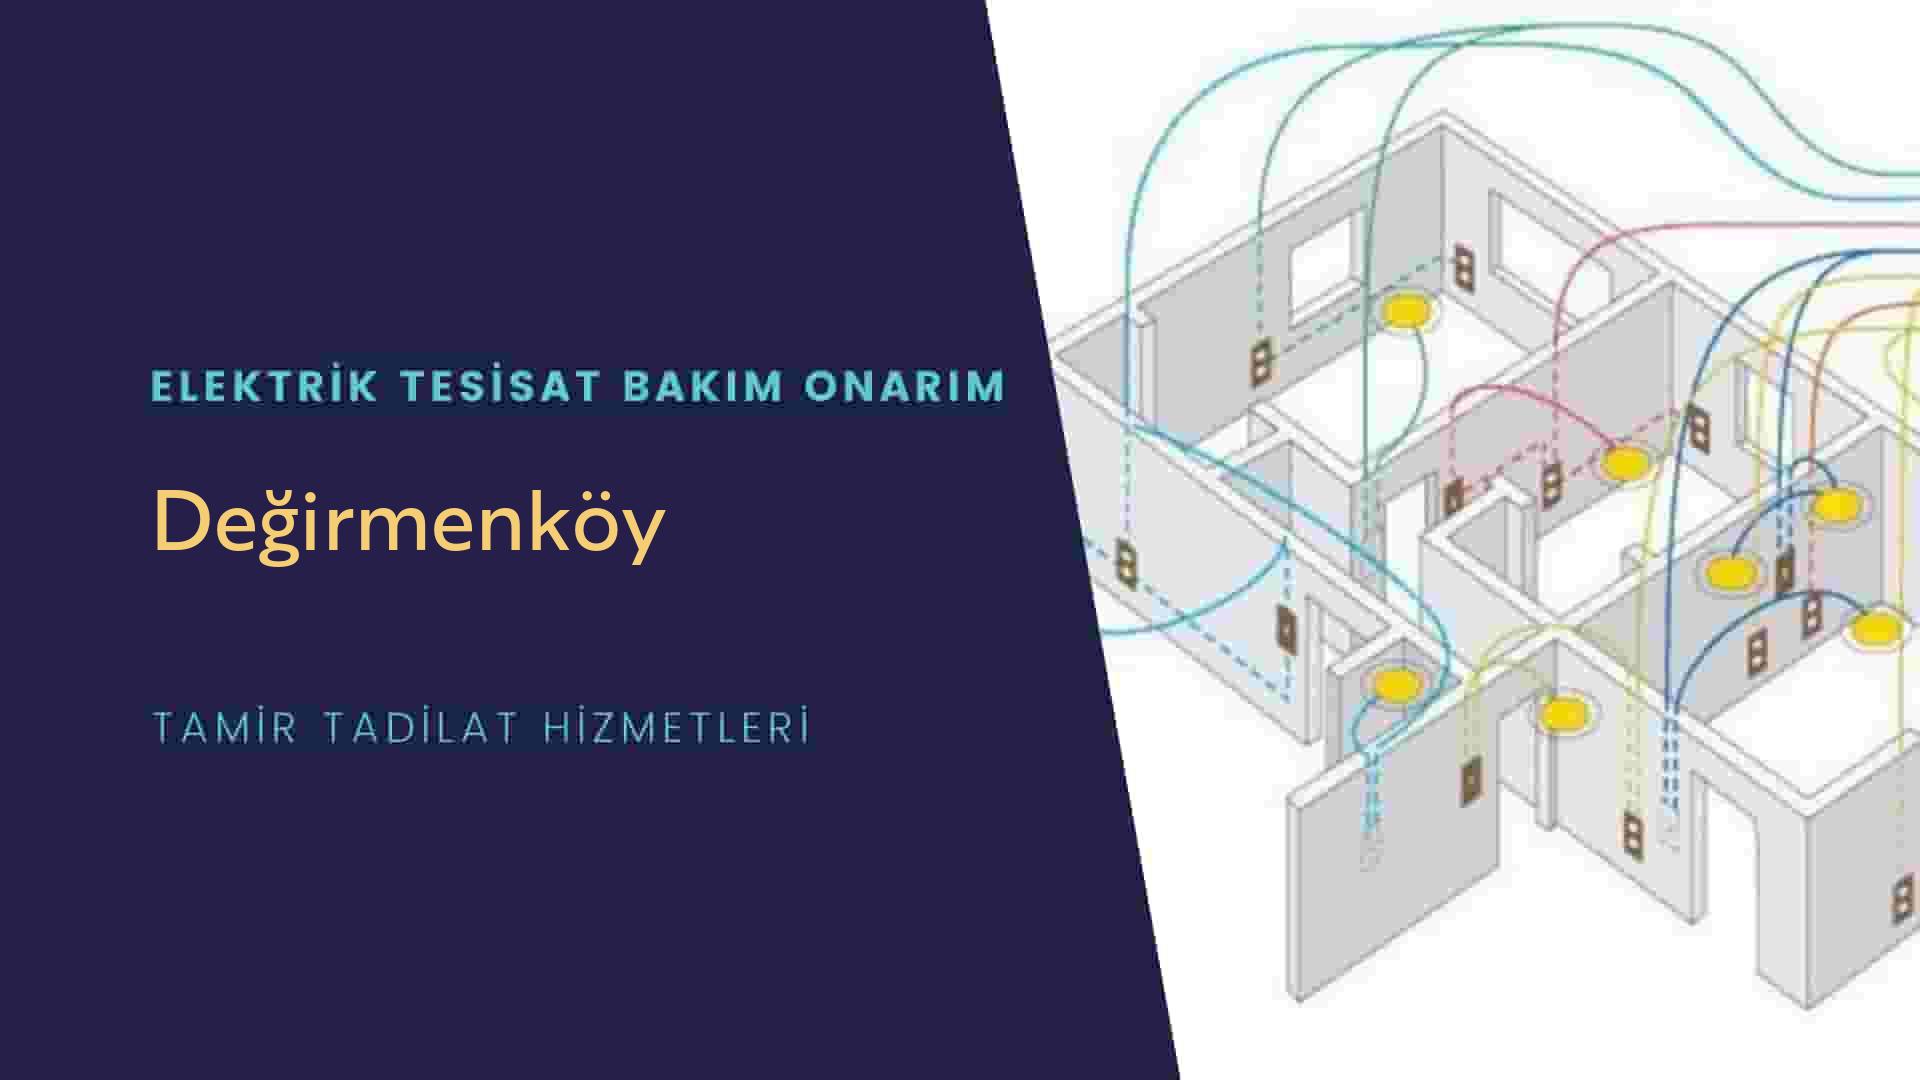 Değirmenköy'de elektrik tesisatı ustalarımı arıyorsunuz doğru adrestenizi Değirmenköy elektrik tesisatı ustalarımız 7/24 sizlere hizmet vermekten mutluluk duyar.